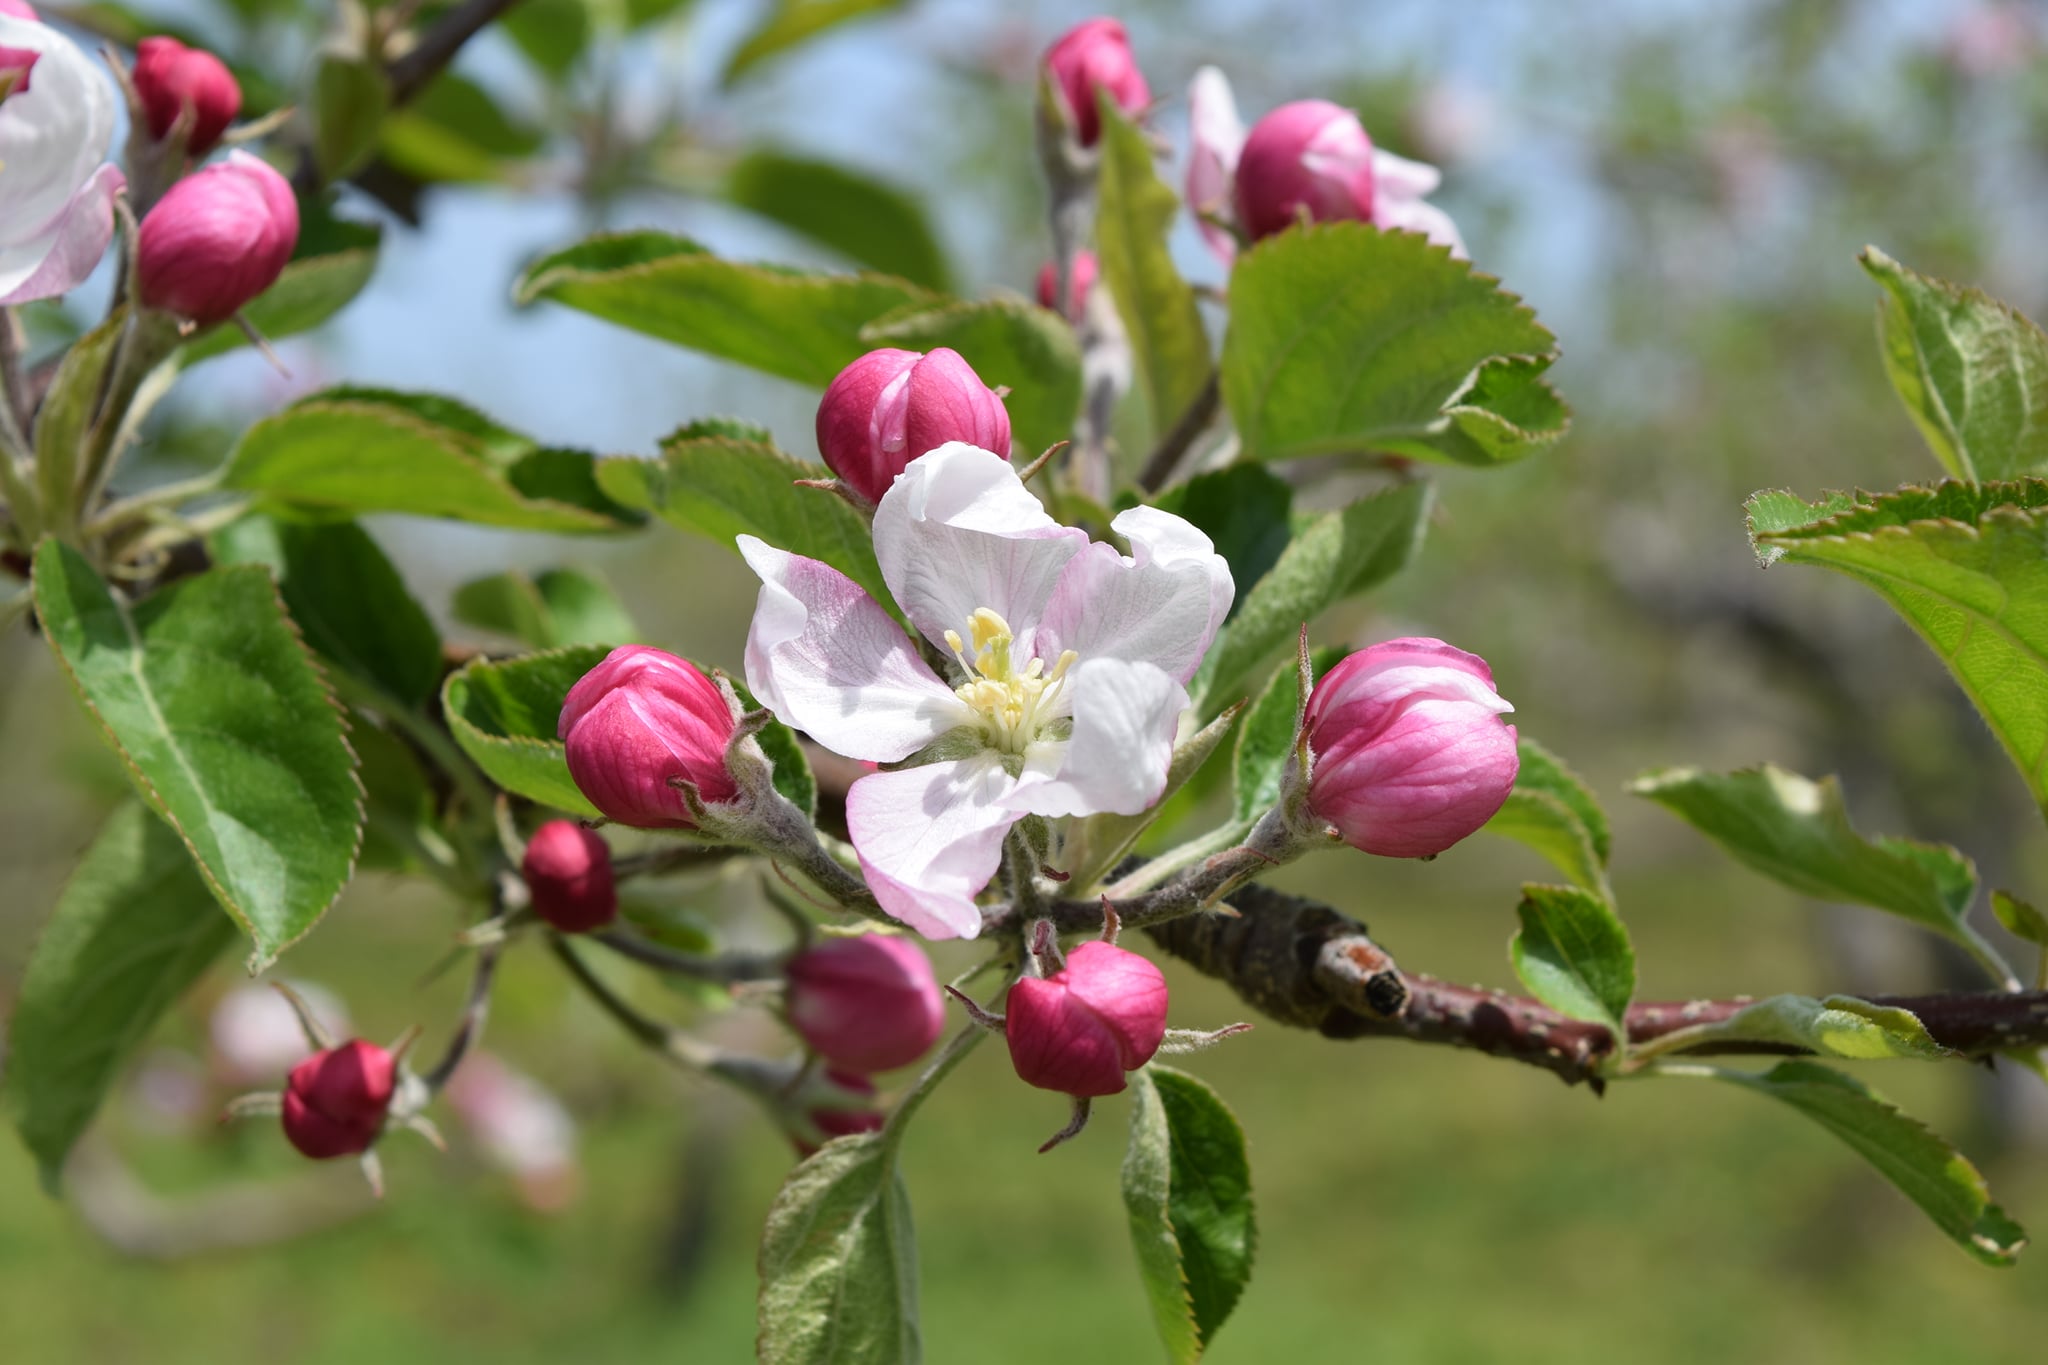 りんごの花の10日間 美しく咲くだけじゃない 確実に受粉をしてりんごの実に 弘前ぐらし 青森県弘前市の移住 交流 Ujiターン応援サイト